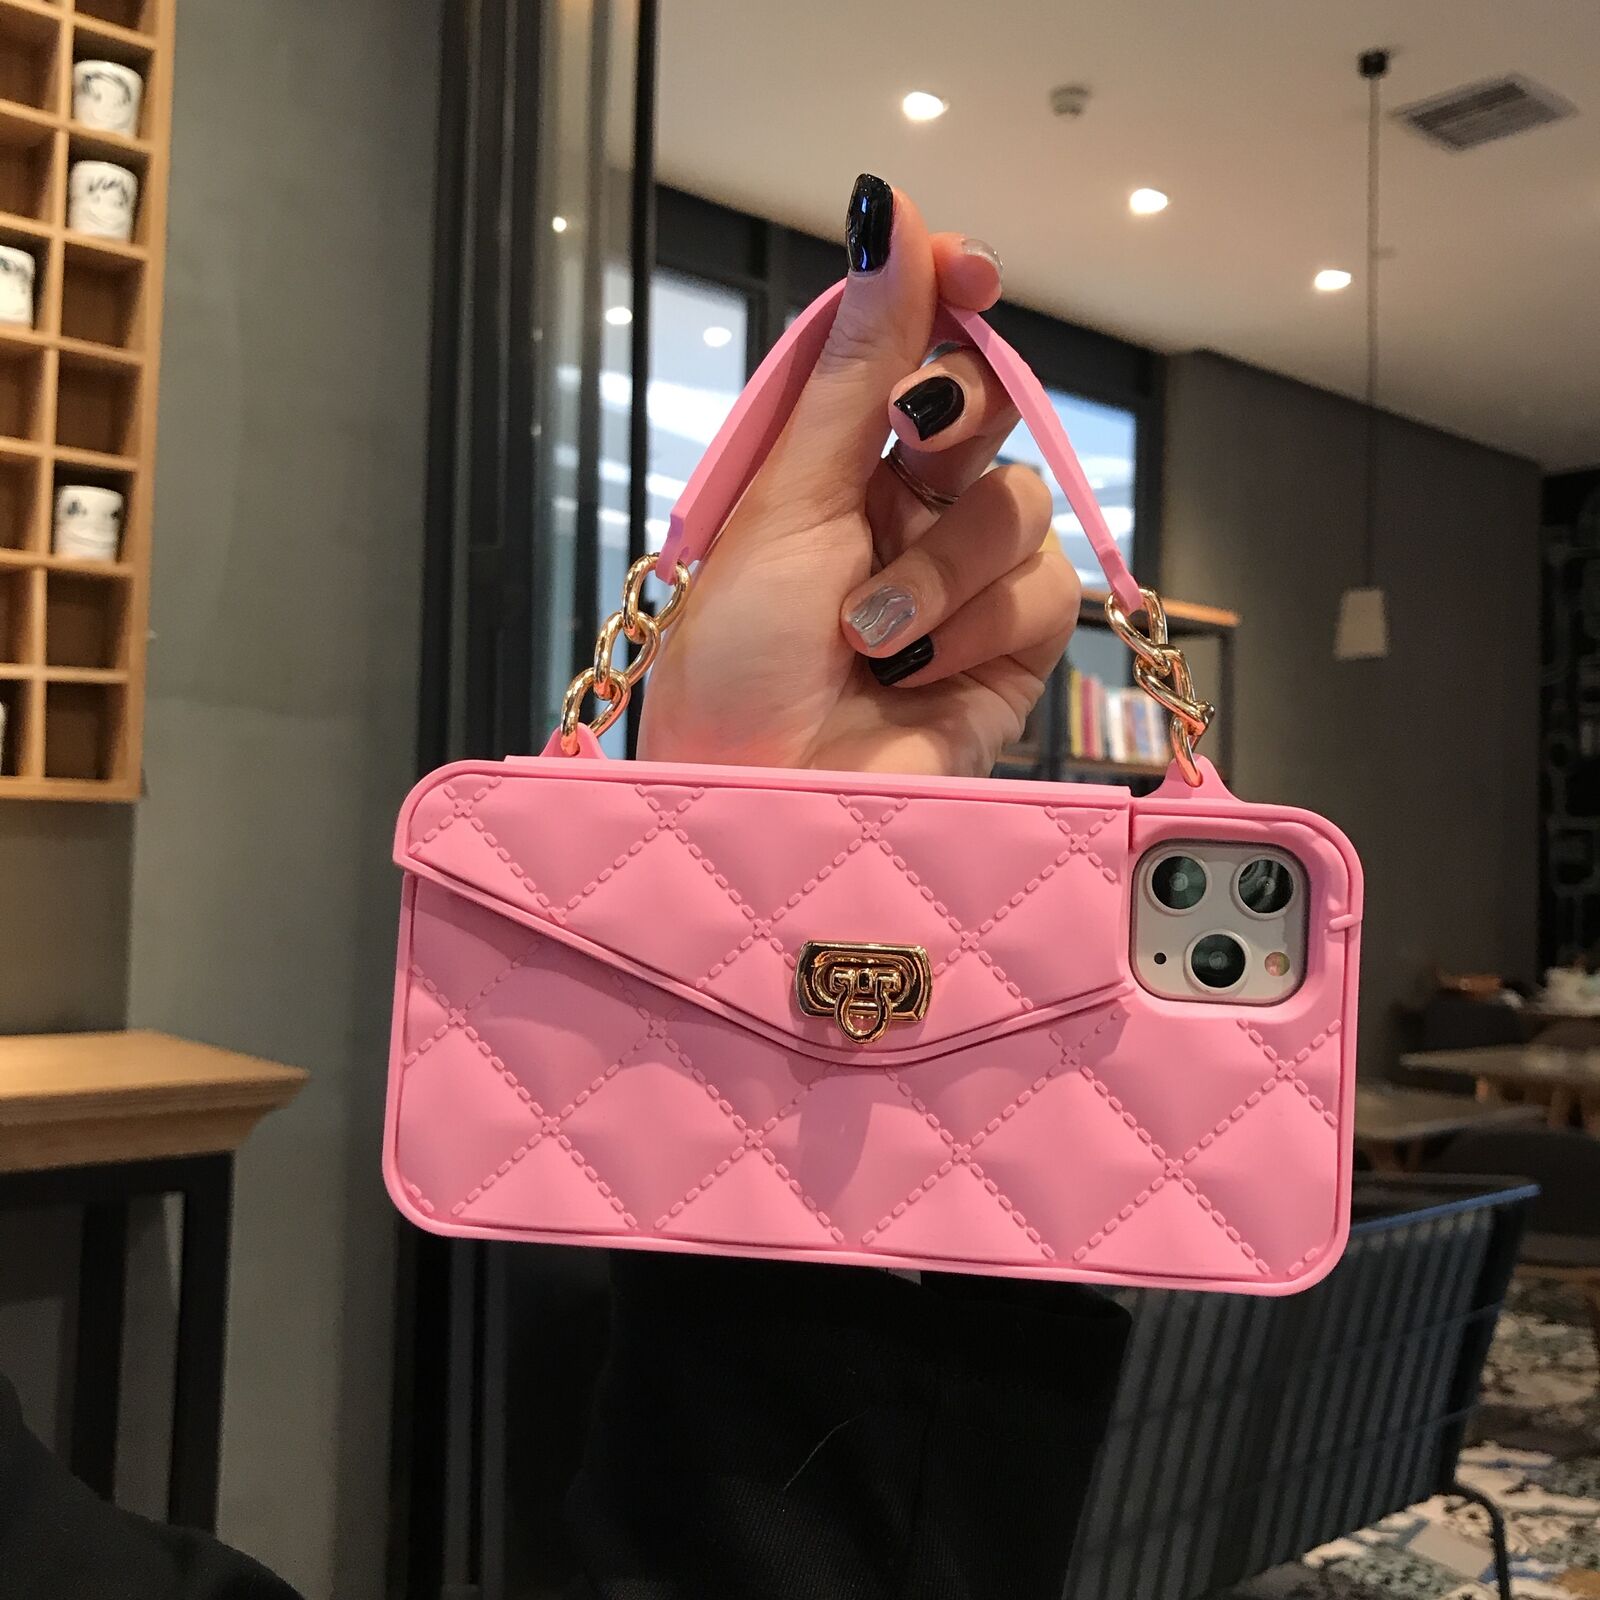 Handbag Crossbody Wallet Strap Case For iPhone - carolay.co